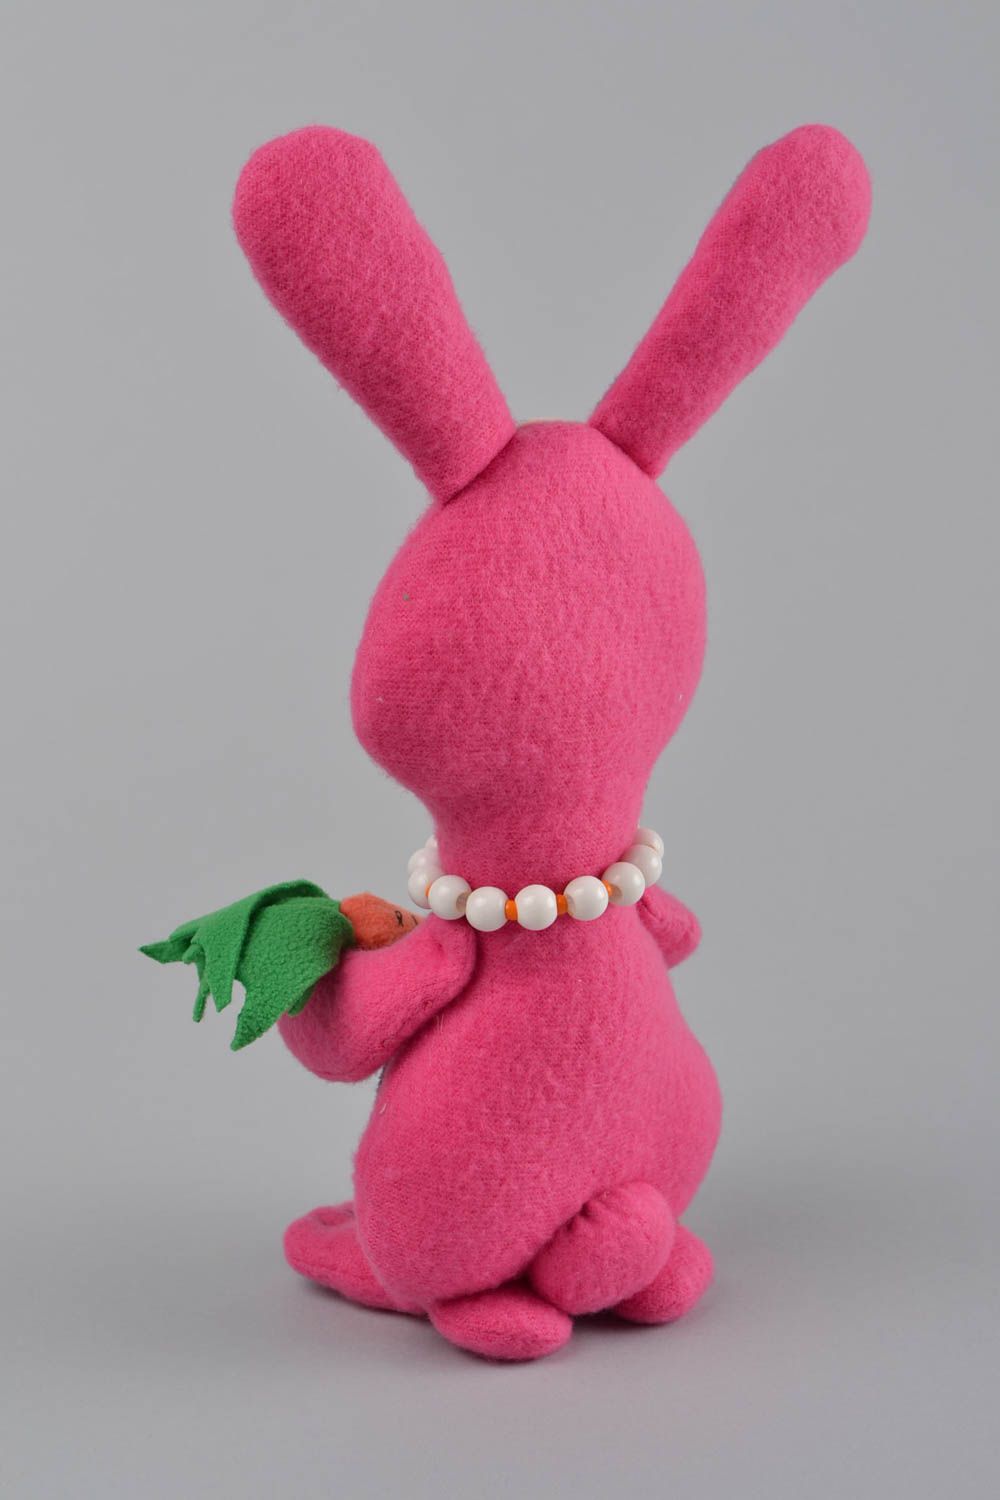 Rosa handmade Kuscheltier Hase aus Fleece für Kinder originell schön Geschenk foto 5